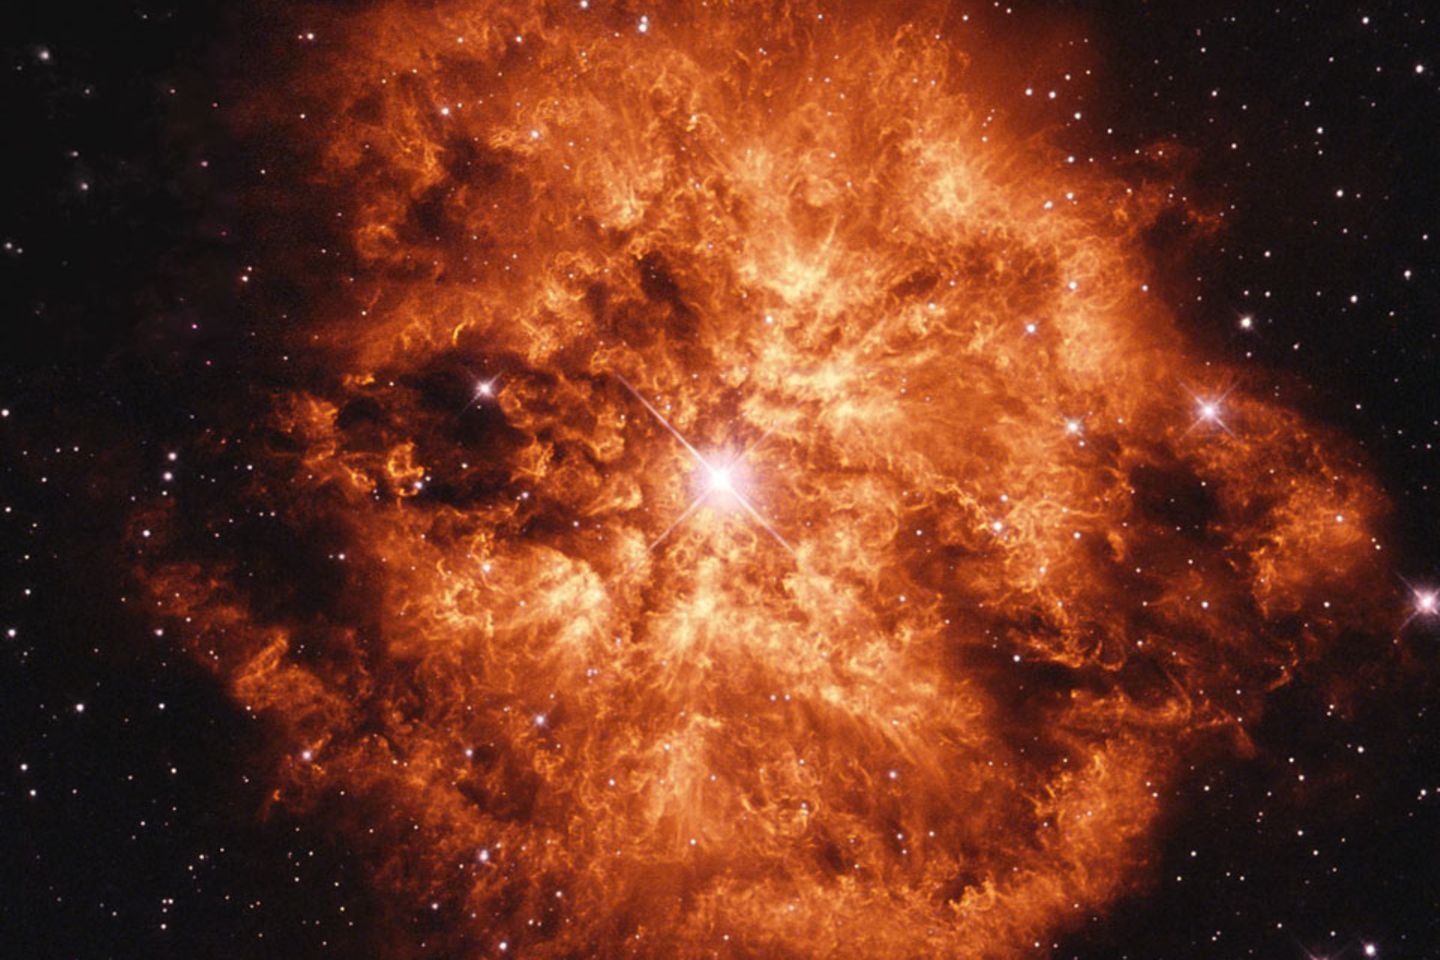 Kohlenstoffstaub entsteht im Universum beispielsweise, wenn sich große Sterne am Ende ihrer Lebenszeit aufblähen. Schwere Elemente aus dem Stern werden vom Sternenwind hinaus ins All getragen, wo der Kohlenstoff zu Staubteilchen kondensiert. Das Foto zeigt den Wolf-Rayet-Stern WR 124 mitsamt seinem umgebenden Nebel